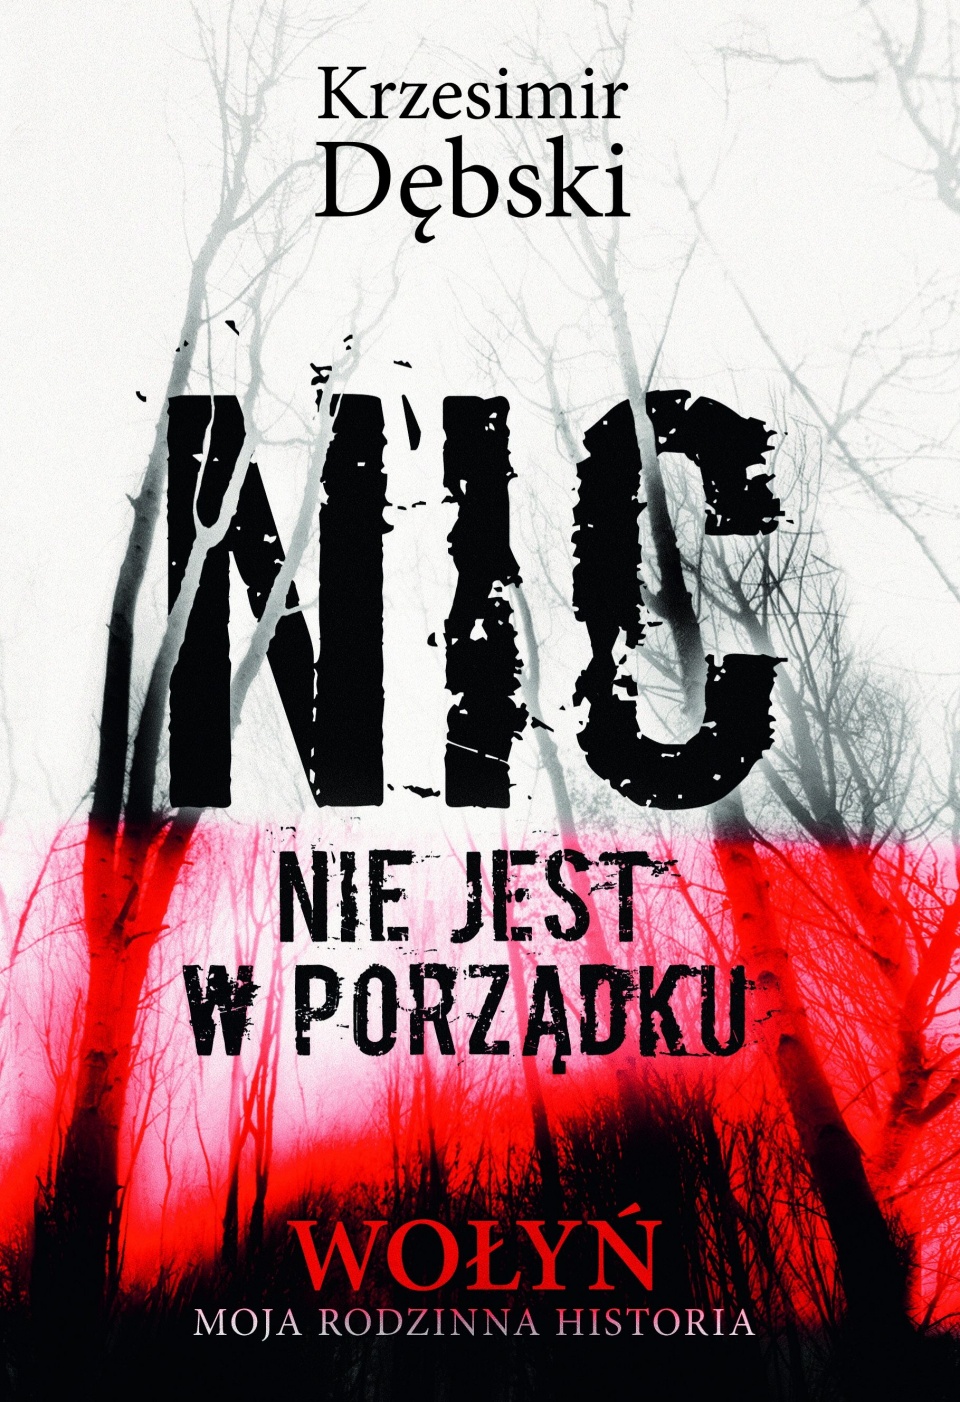 Okładka książki Krzesimira Dębskiego "Nic nie jest w porządku. Wołyń – moja rodzinna historia".